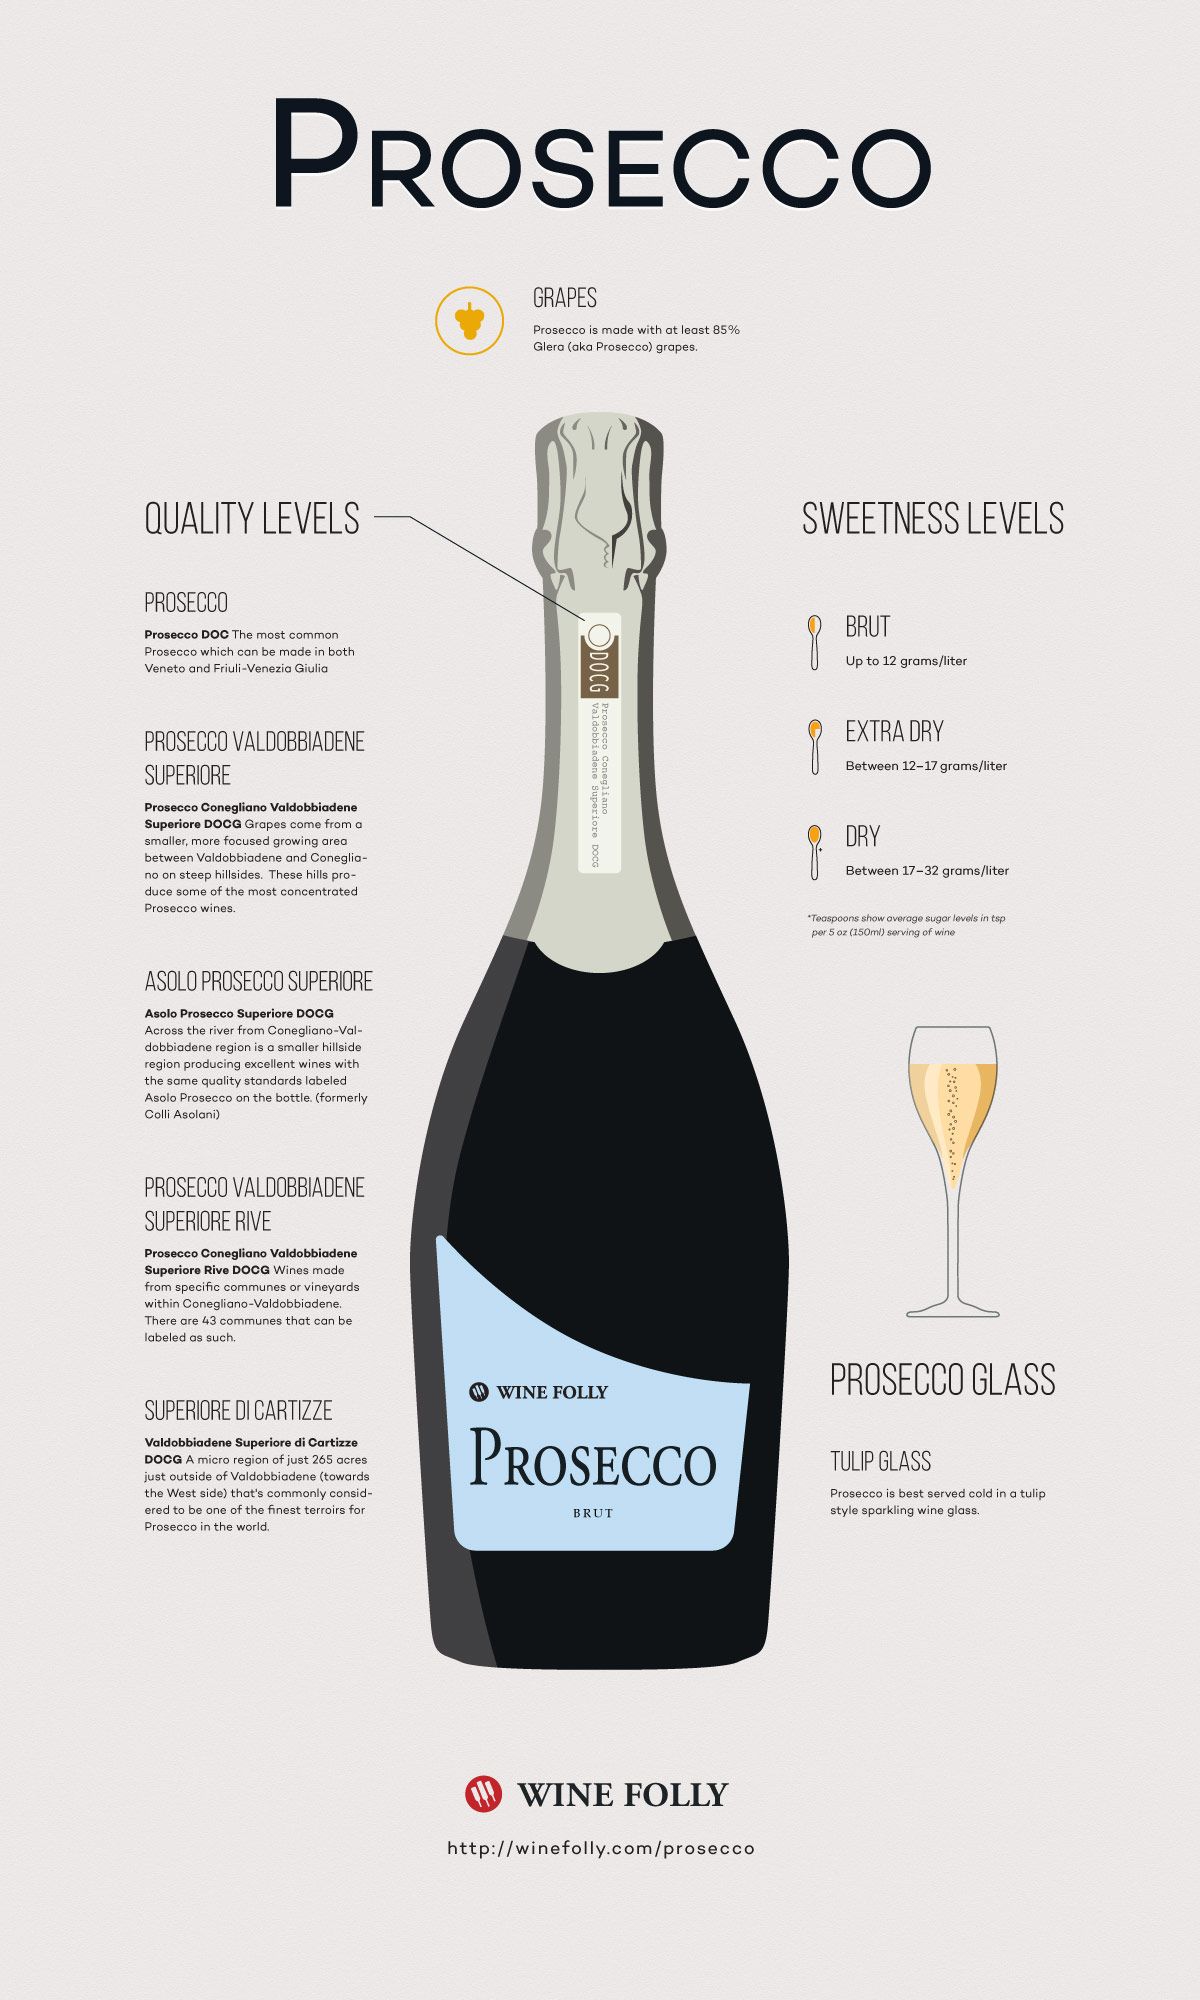 מדריך חזותי ליין פרוסקו מאת היין האיוולת